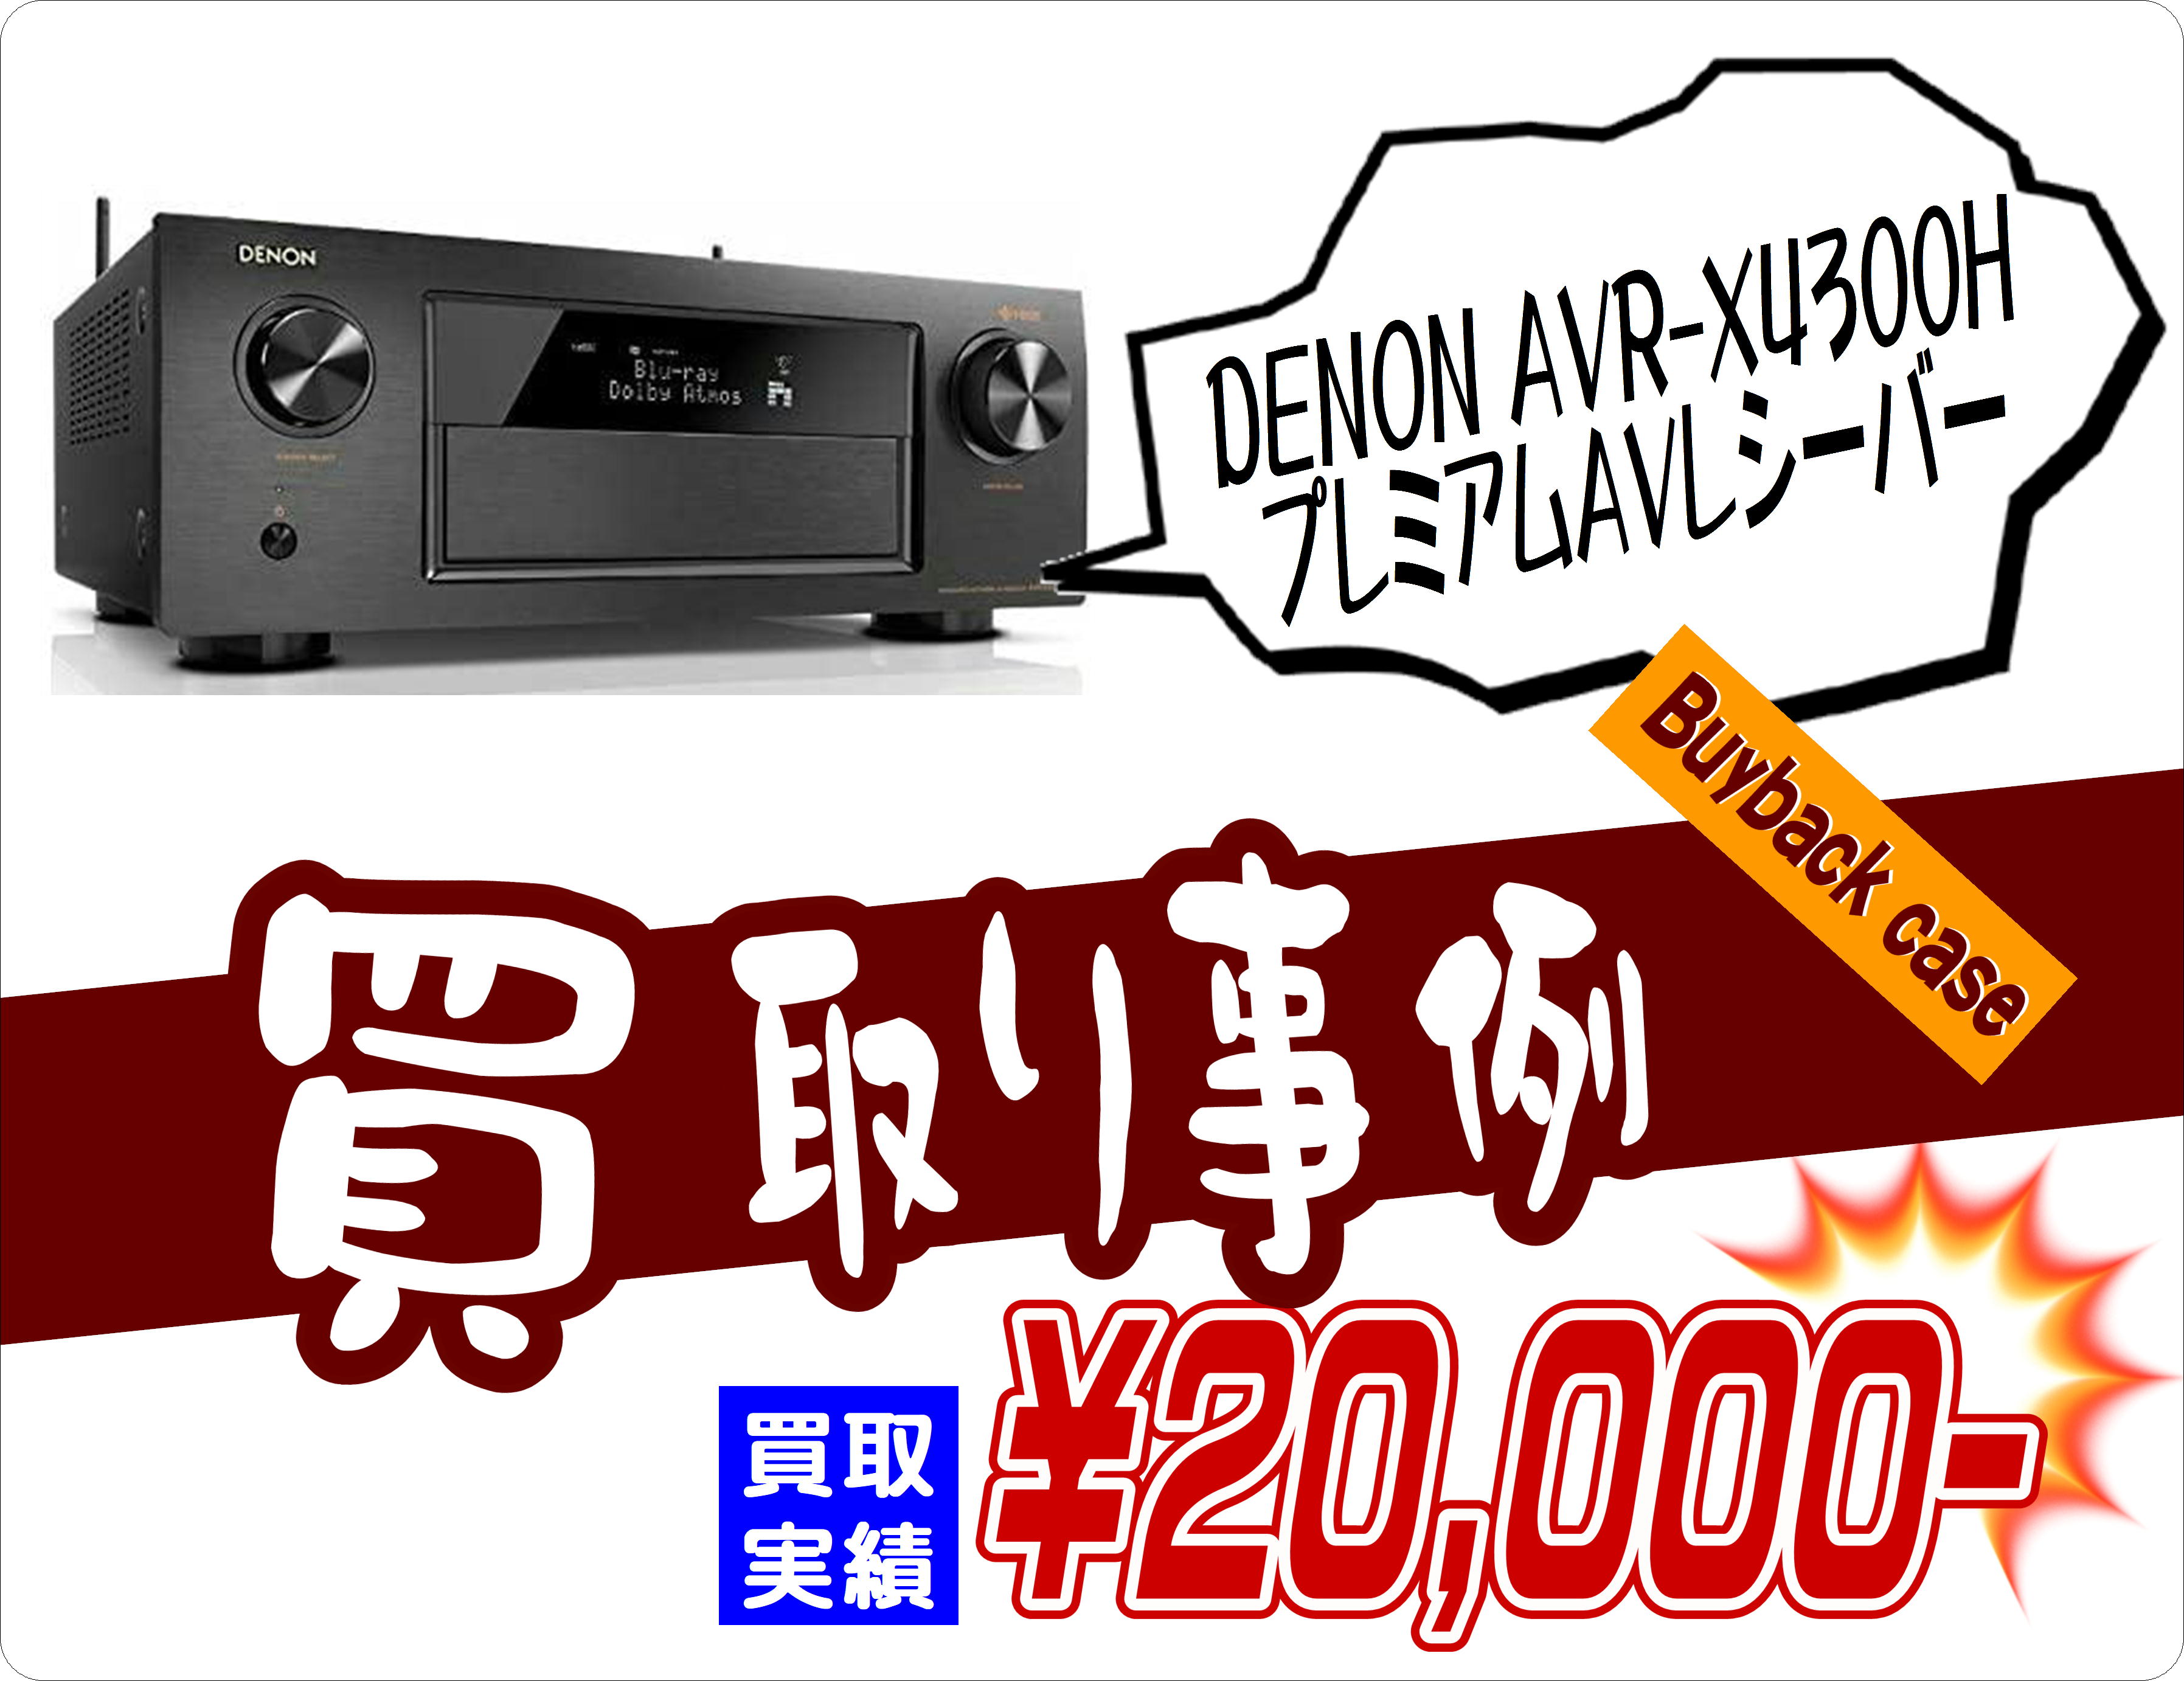 DENON AVR-X4300H プレミアムAVレシーバー